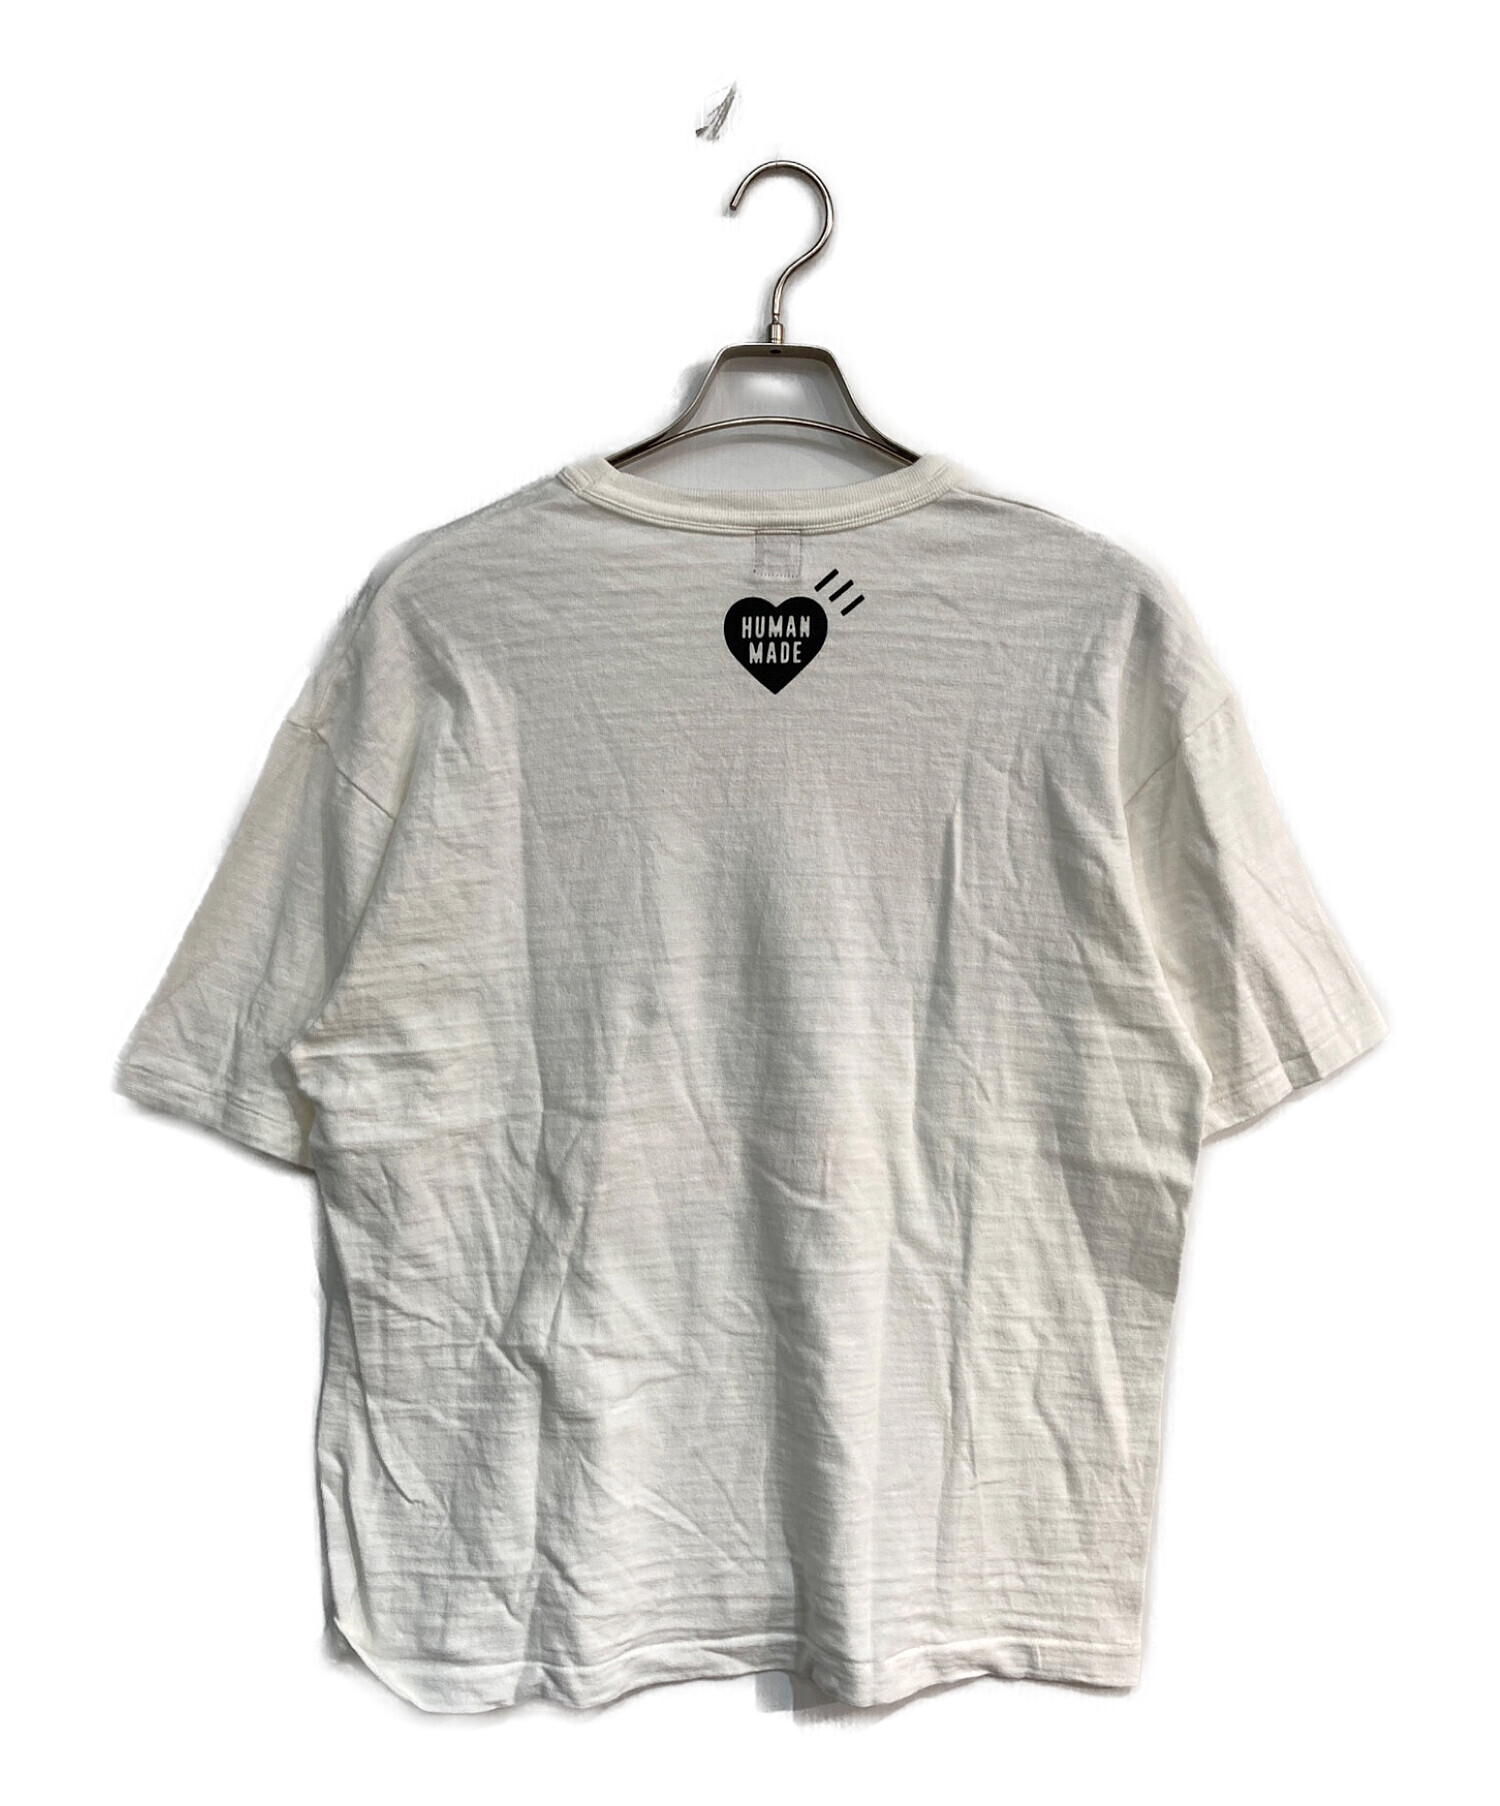 HUMAN MADE (ヒューマンメイド) プリントTシャツ ホワイト サイズ:XL